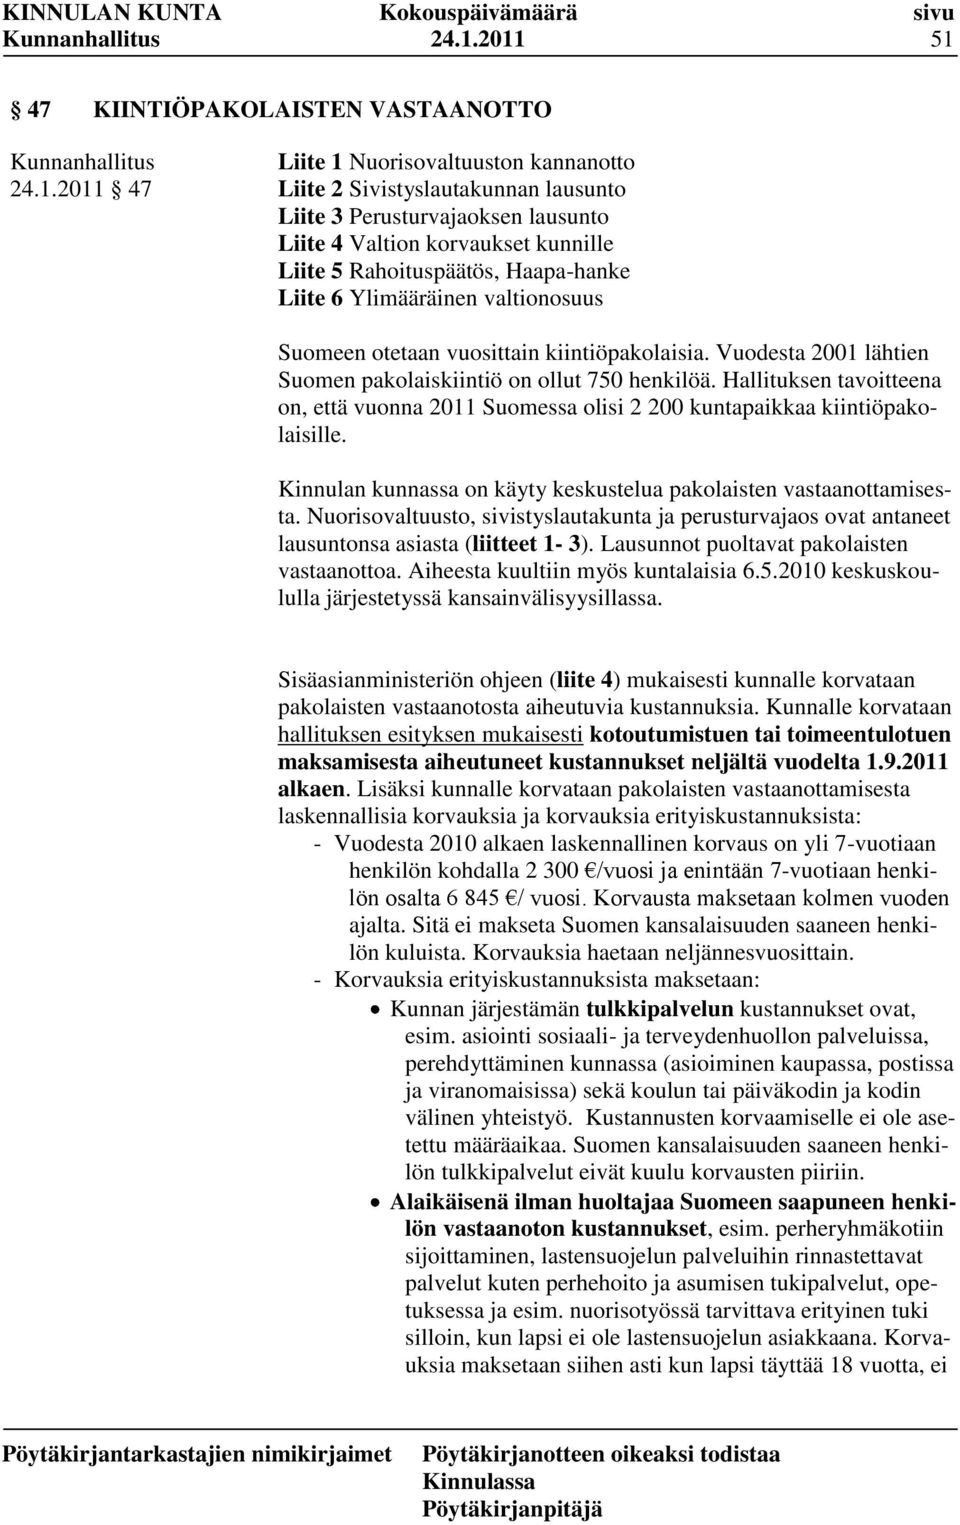 Hallituksen tavoitteena on, että vuonna 2011 Suomessa olisi 2 200 kuntapaikkaa kiintiöpakolaisille. Kinnulan kunnassa on käyty keskustelua pakolaisten vastaanottamisesta.